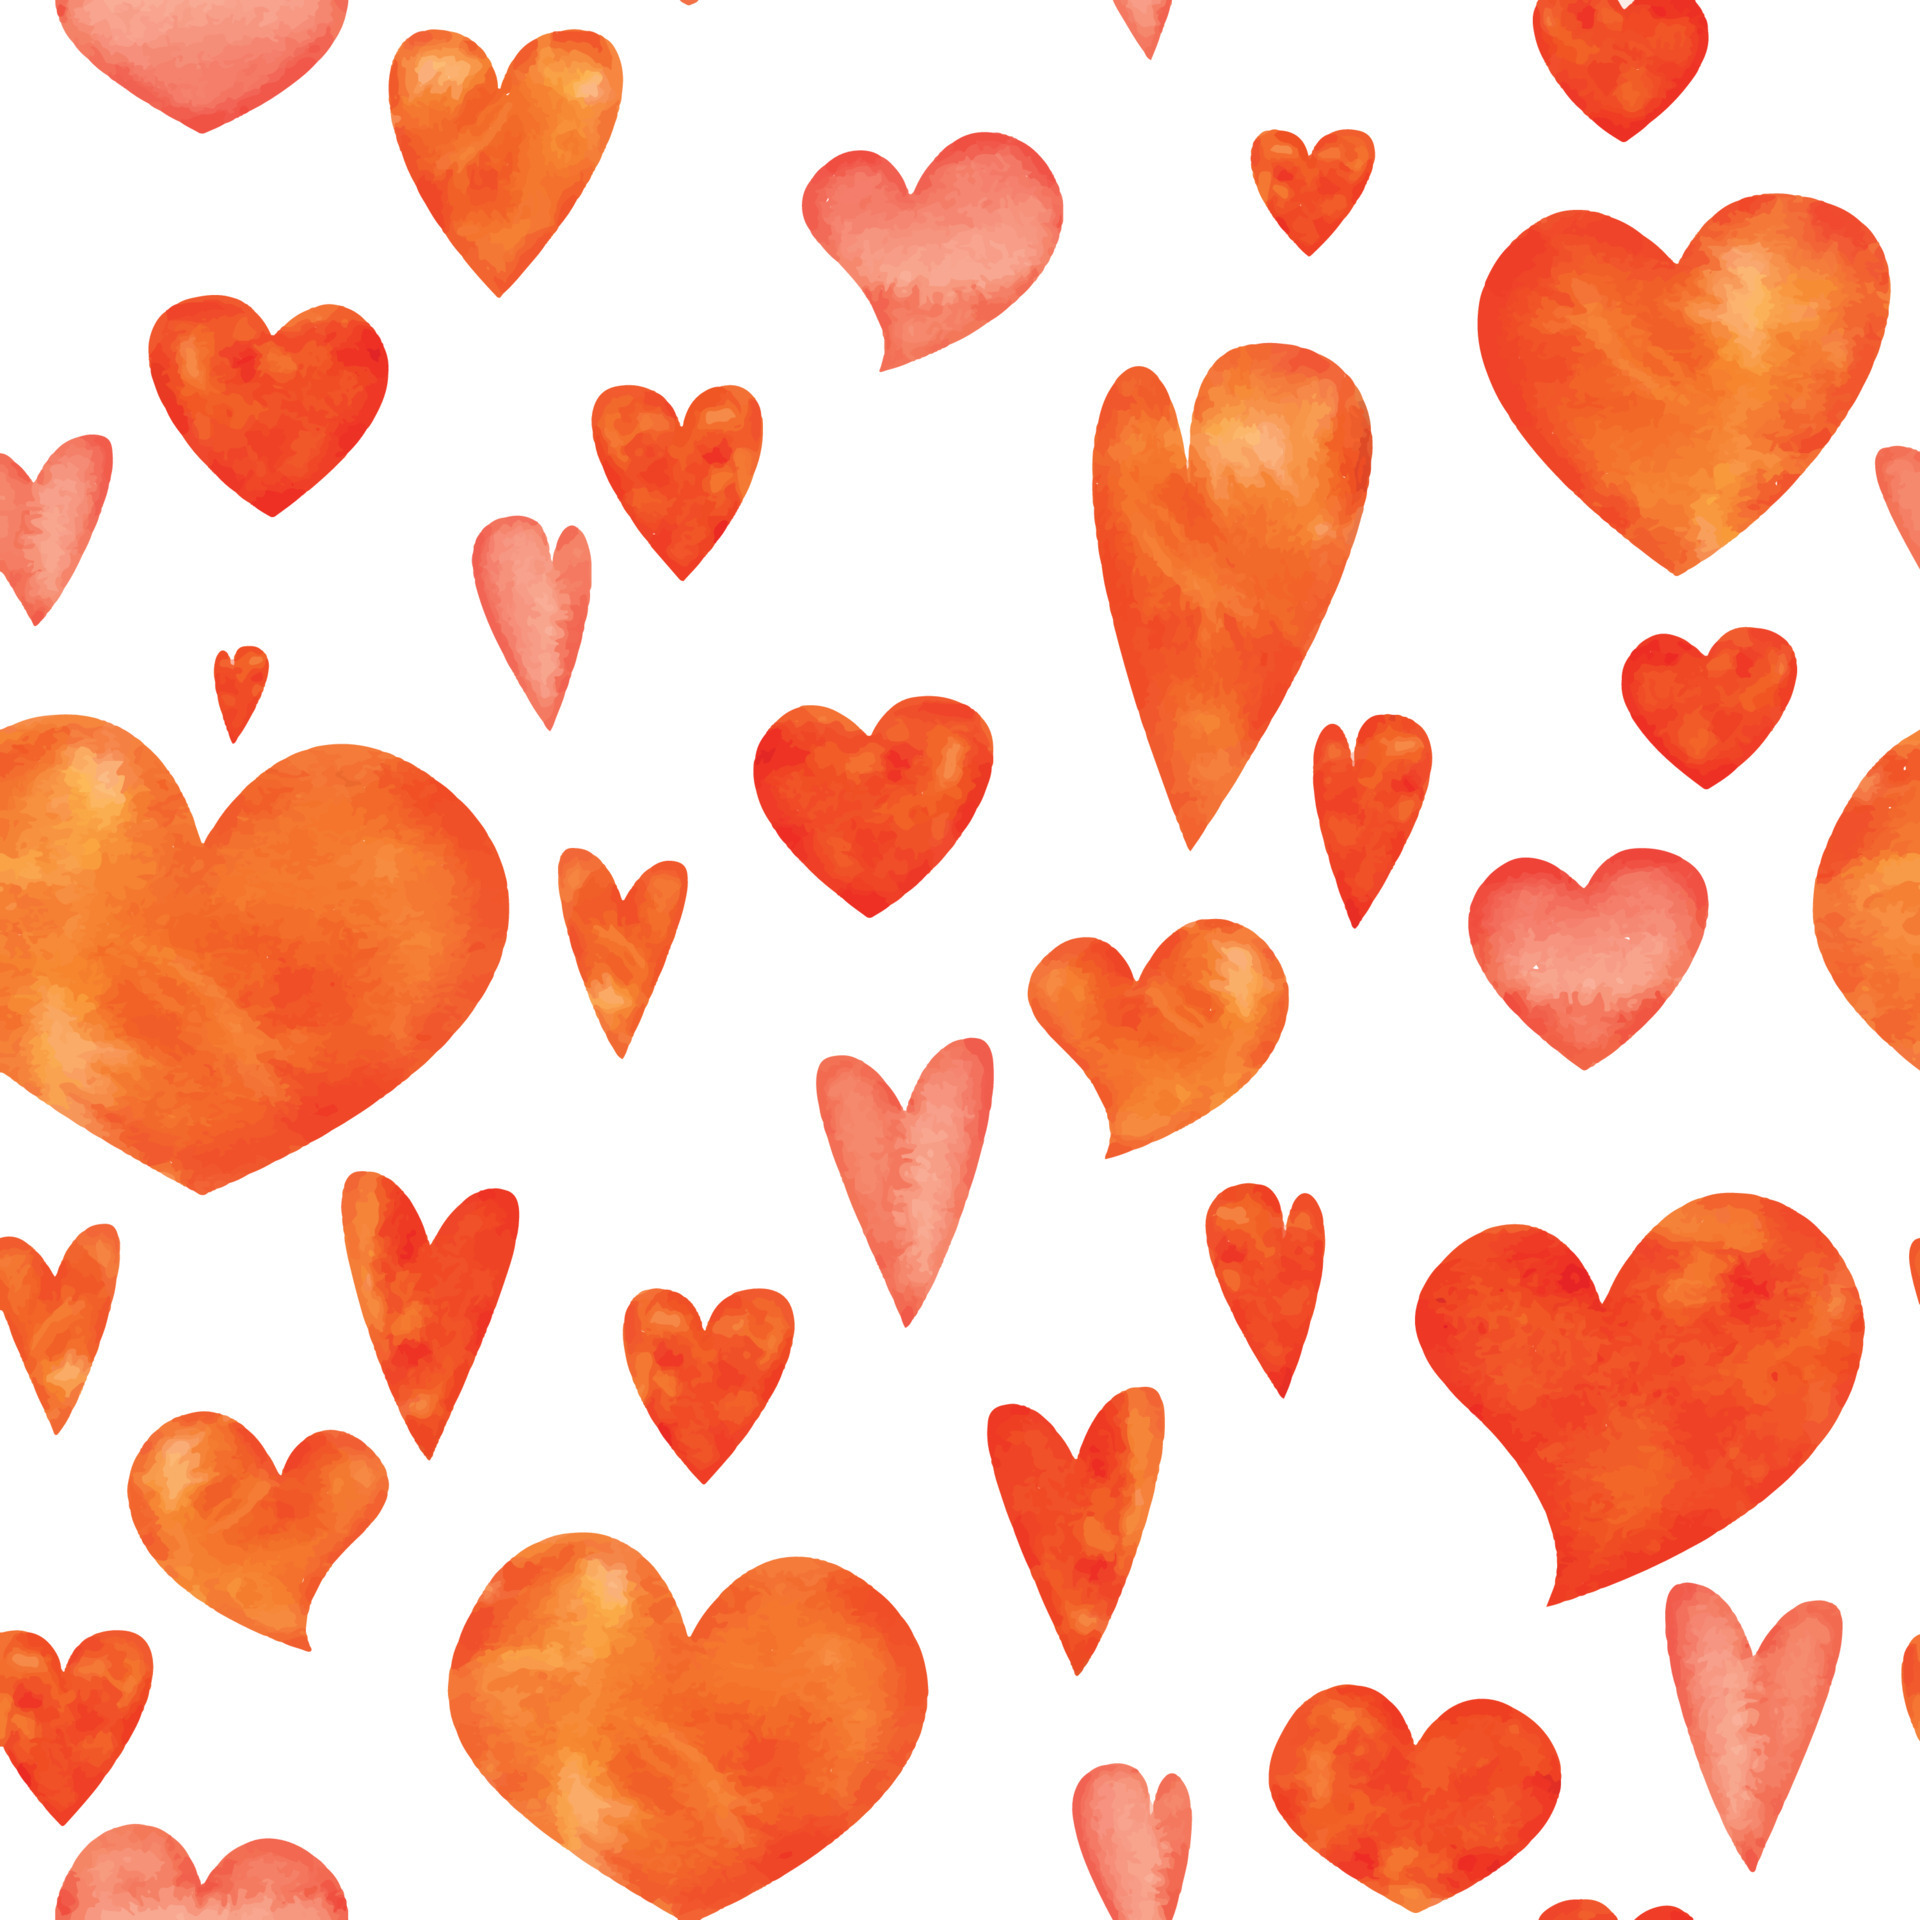 Mẫu hoa văn trái tim cam và đỏ vẽ tay bằng màu nước sẽ là sự lựa chọn hoàn hảo cho những bạn yêu thích sáng tạo và làm việc bằng tay. Với công nghệ in ấn hiện đại, chất lượng đồ họa tuyệt vời và màu sắc rực rỡ, bạn sẽ thực sự hài lòng với sản phẩm của mình.